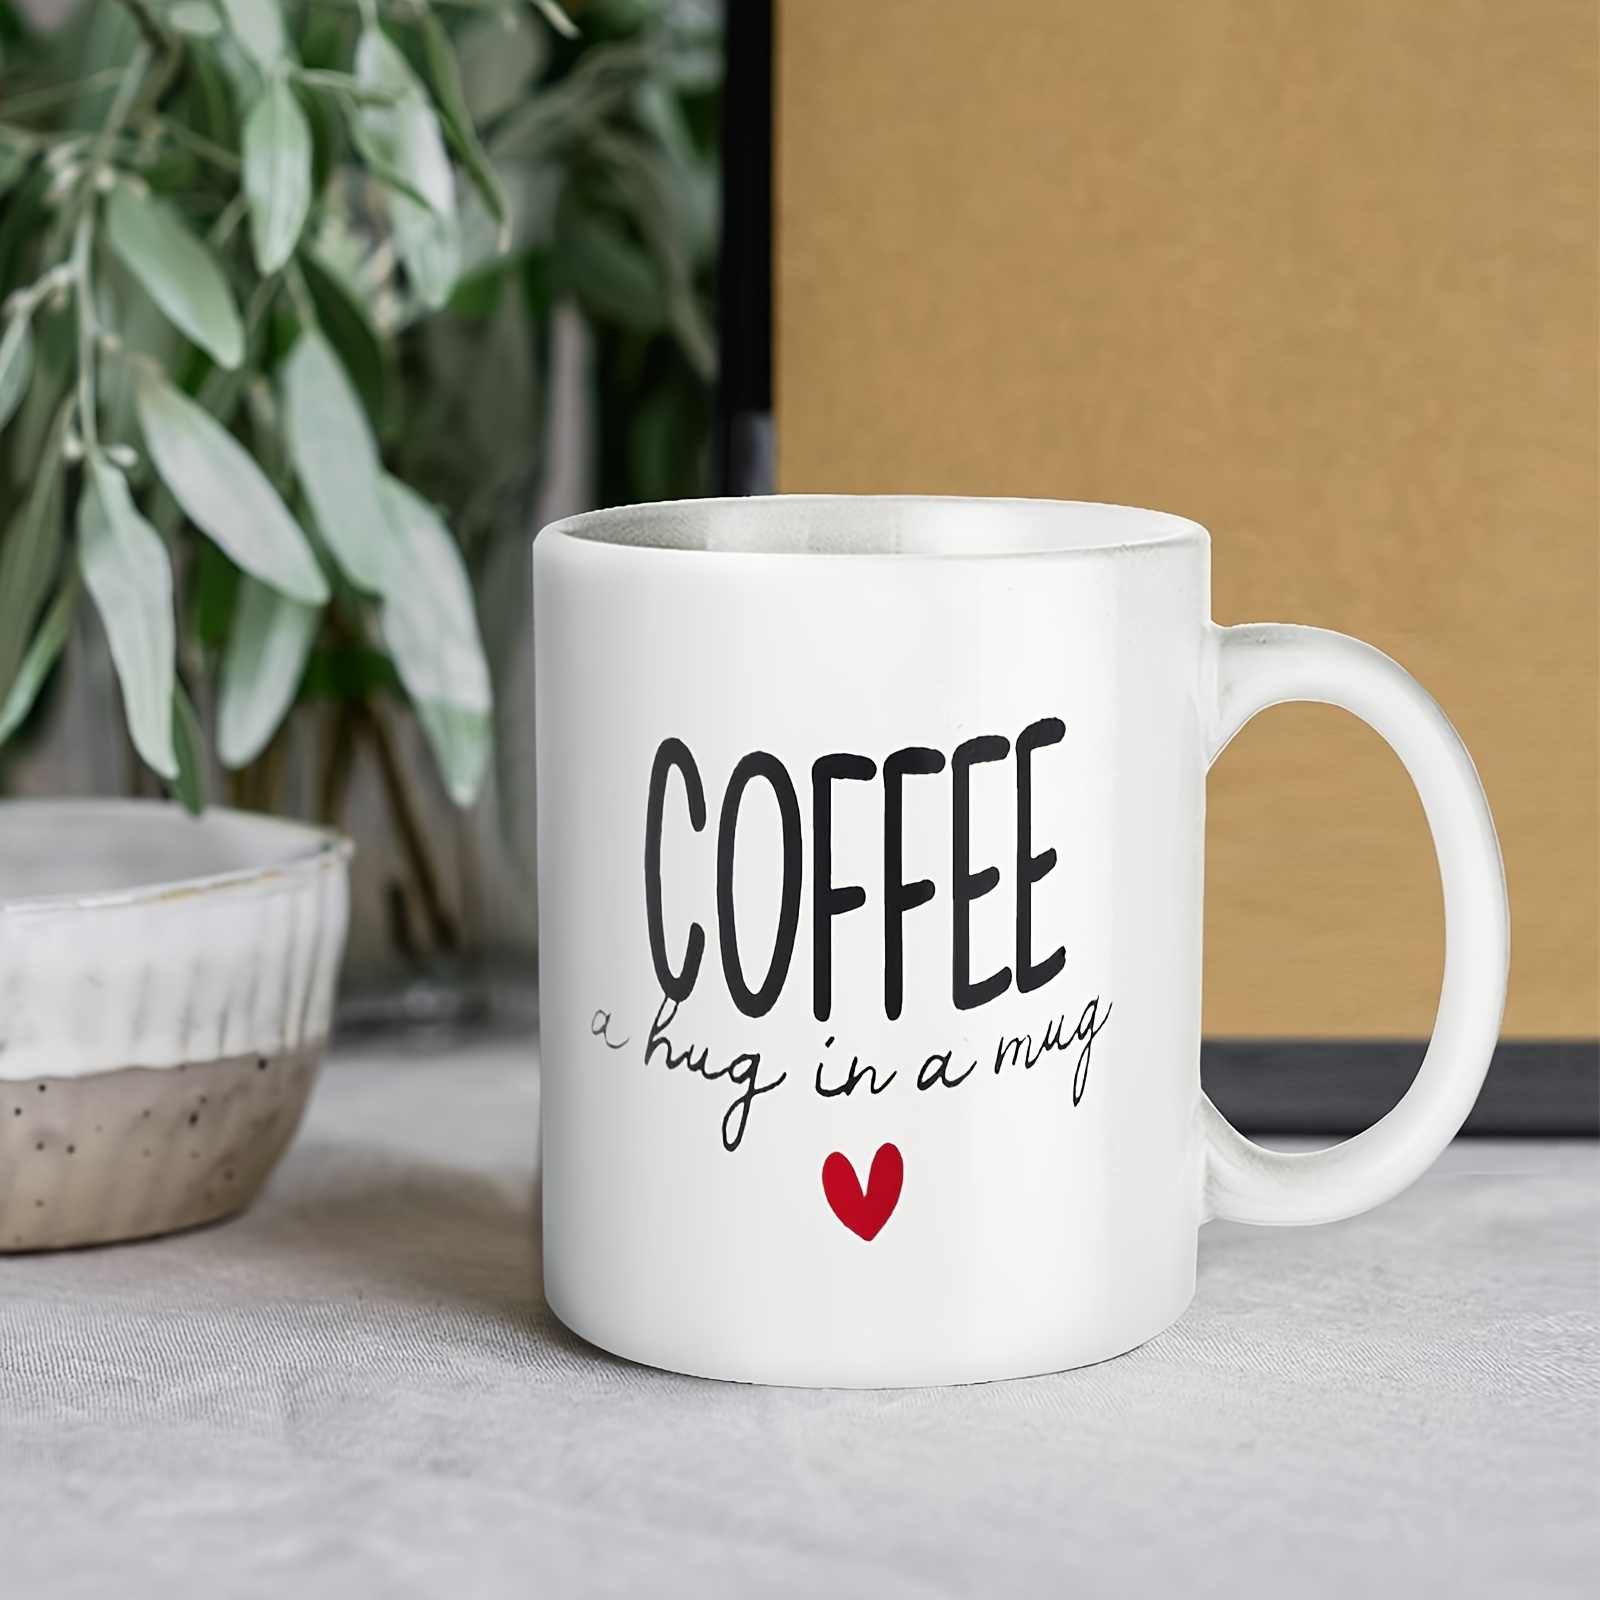 Mr. Coffee Calentador de tazas para café y té, calentador de tazas portátil  para viajes, escritorios de oficina y hogar, color negro | Regalos para